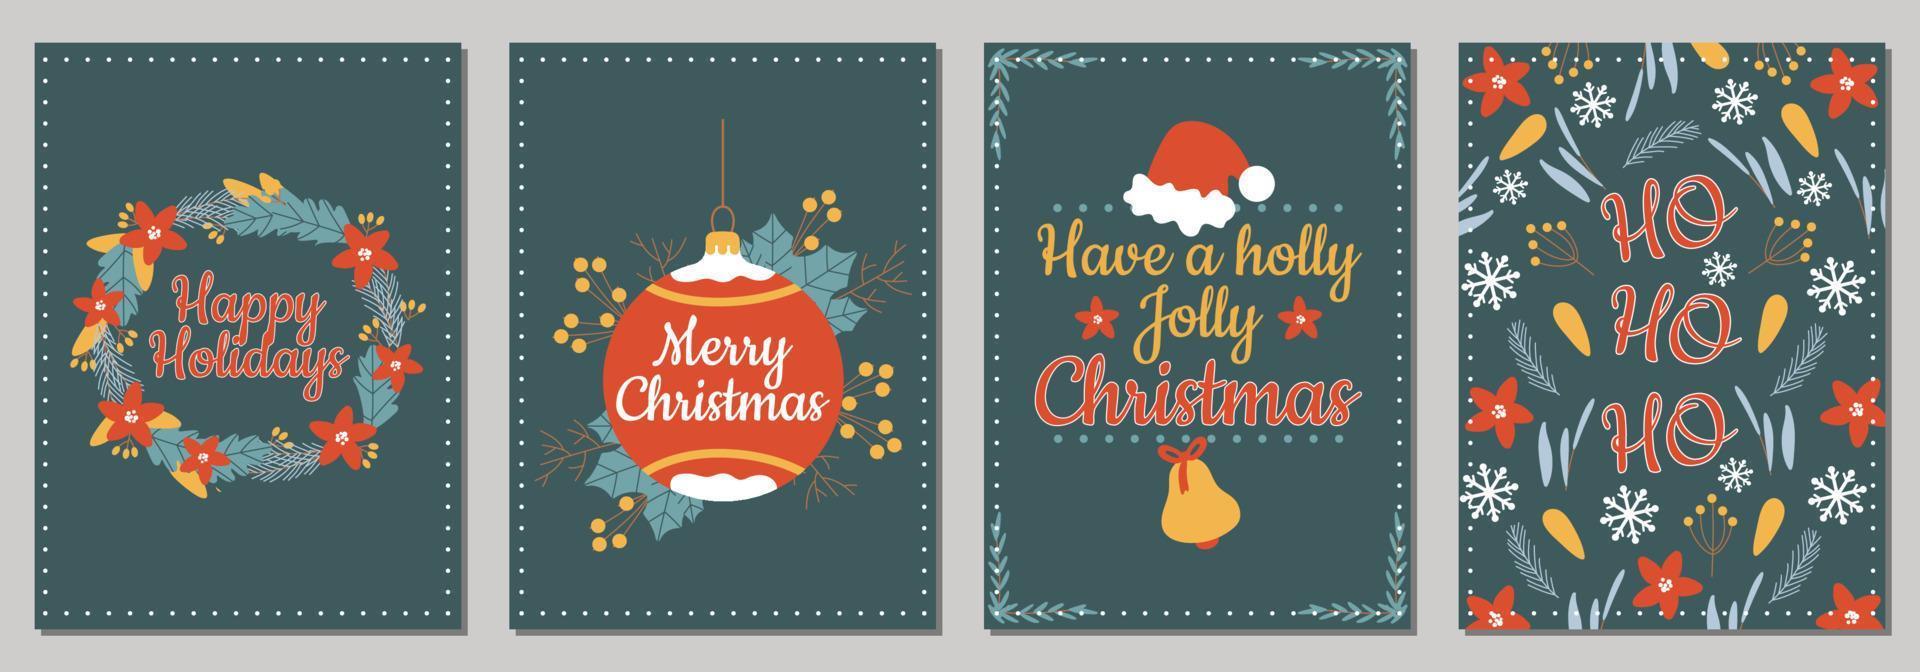 tarjetas navideñas con feliz navidad con adornos navideños y diseño tipográfico. ilustración vectorial felices fiestas y feliz año nuevo vector